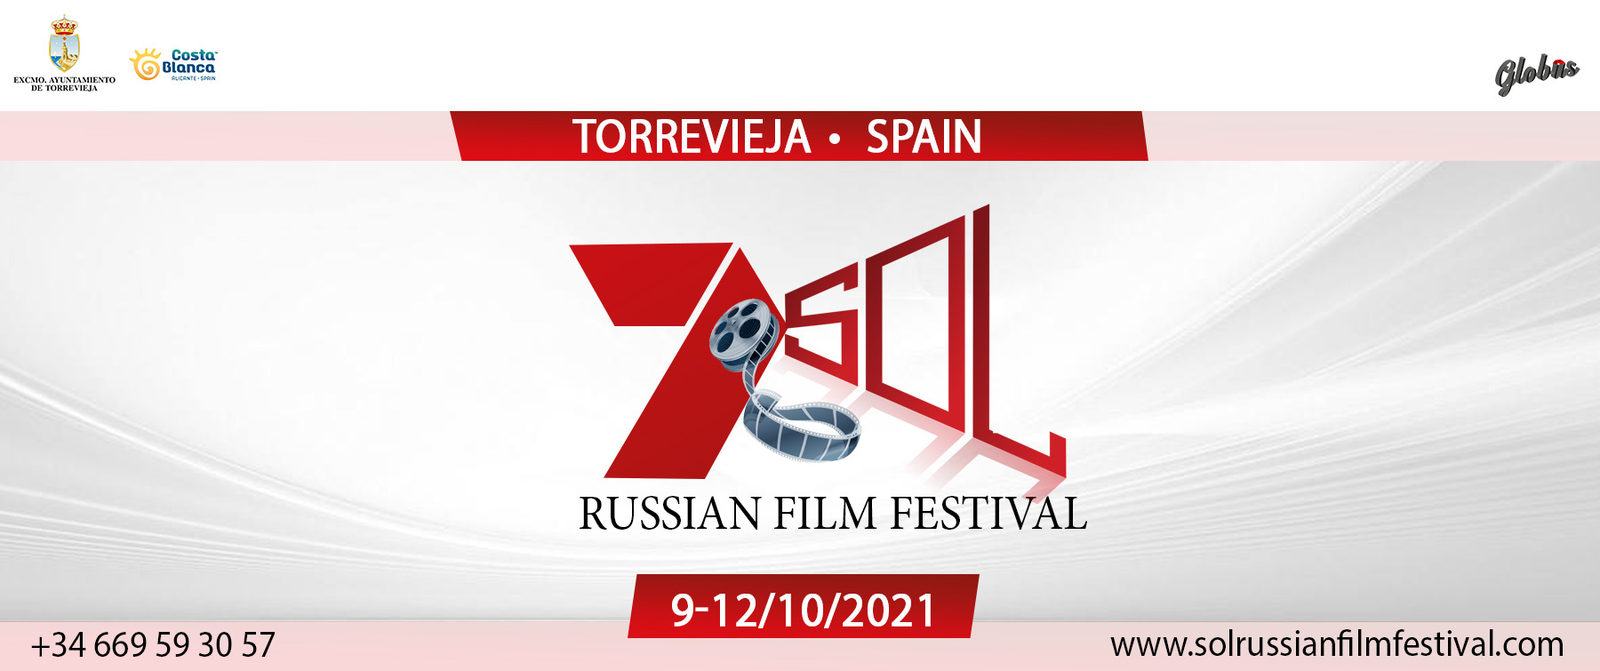 Седьмой фестиваль российского кино SOL состоится осенью 2021 года